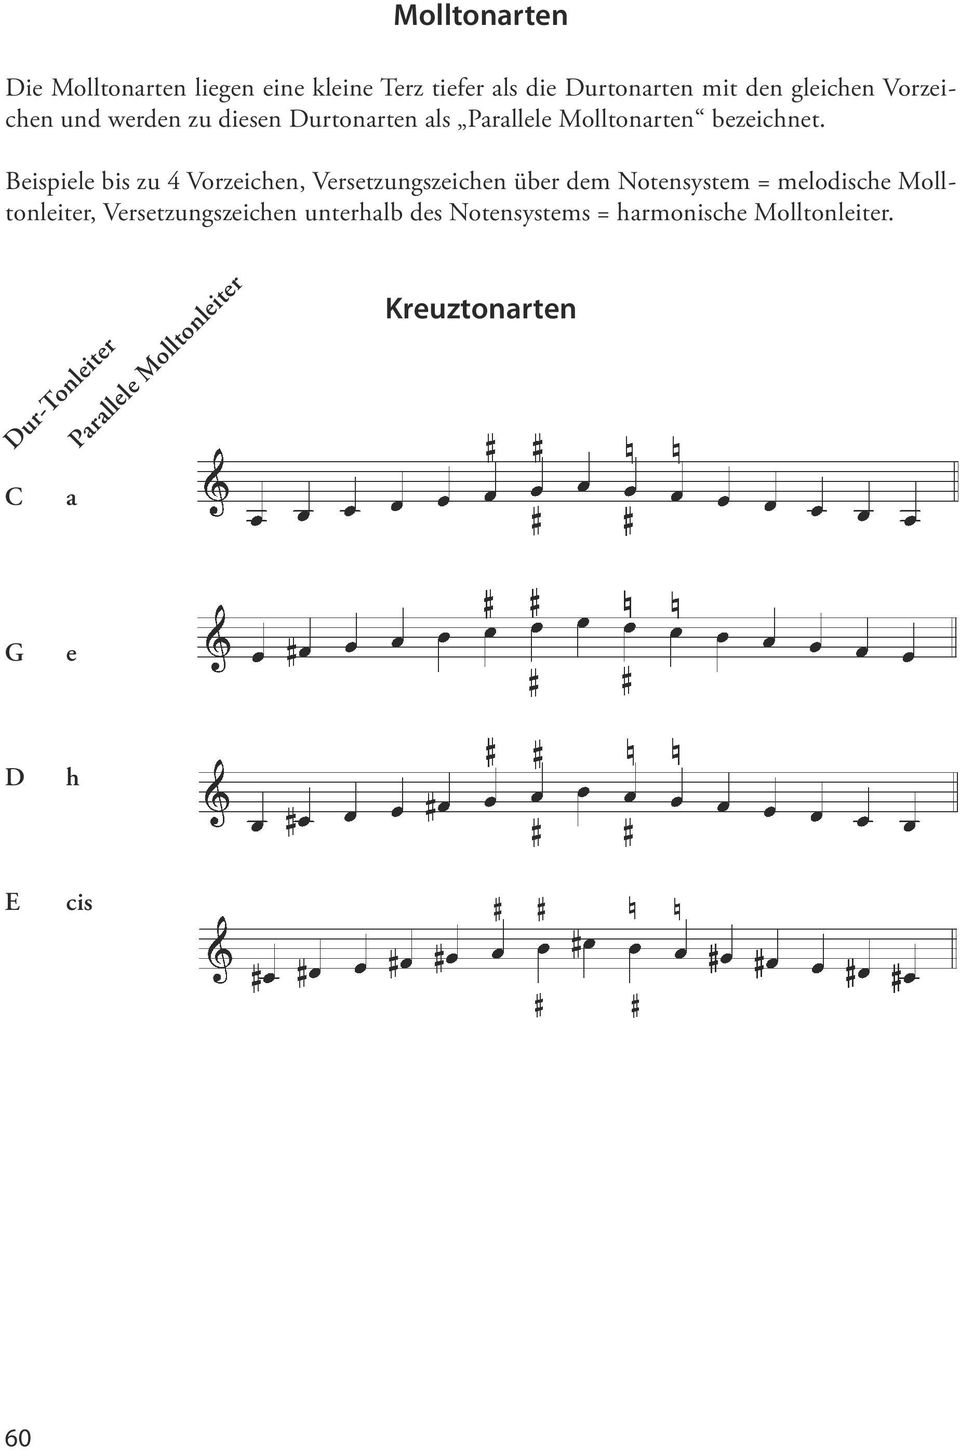 Beispiele bis zu 4 Vorzeichen, Versetzungszeichen über dem Notensystem = melodische Molltonleiter,